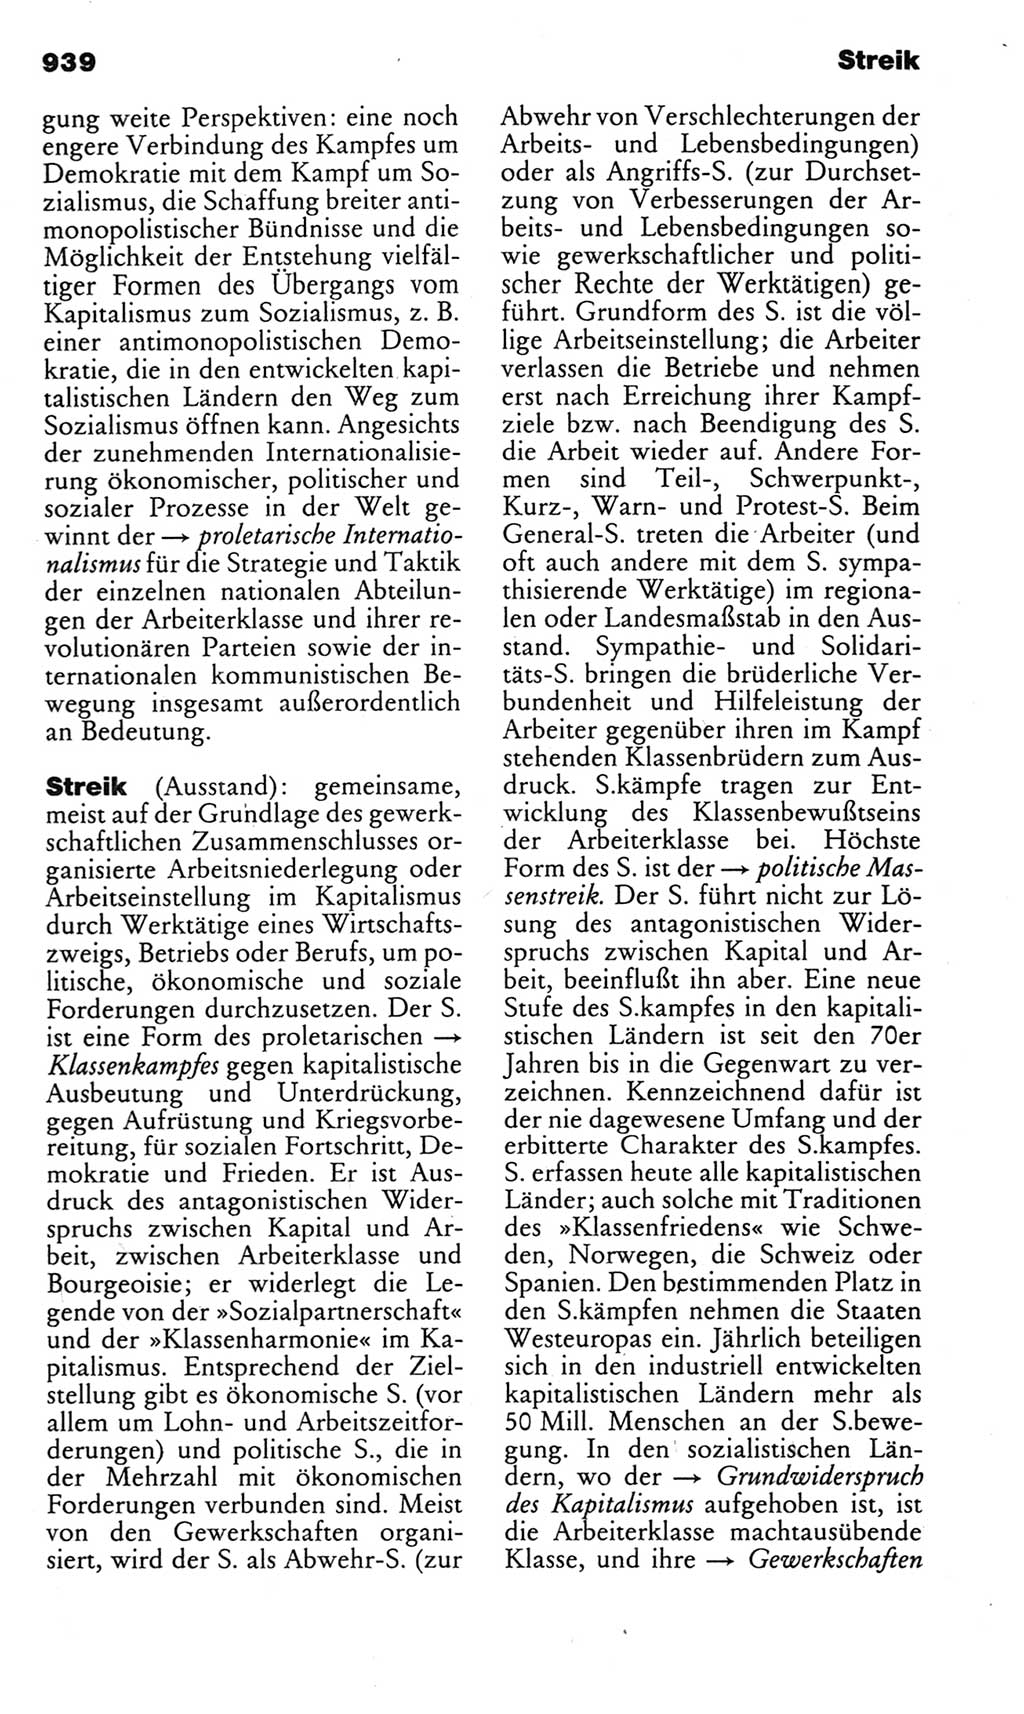 Kleines politisches Wörterbuch [Deutsche Demokratische Republik (DDR)] 1983, Seite 939 (Kl. pol. Wb. DDR 1983, S. 939)